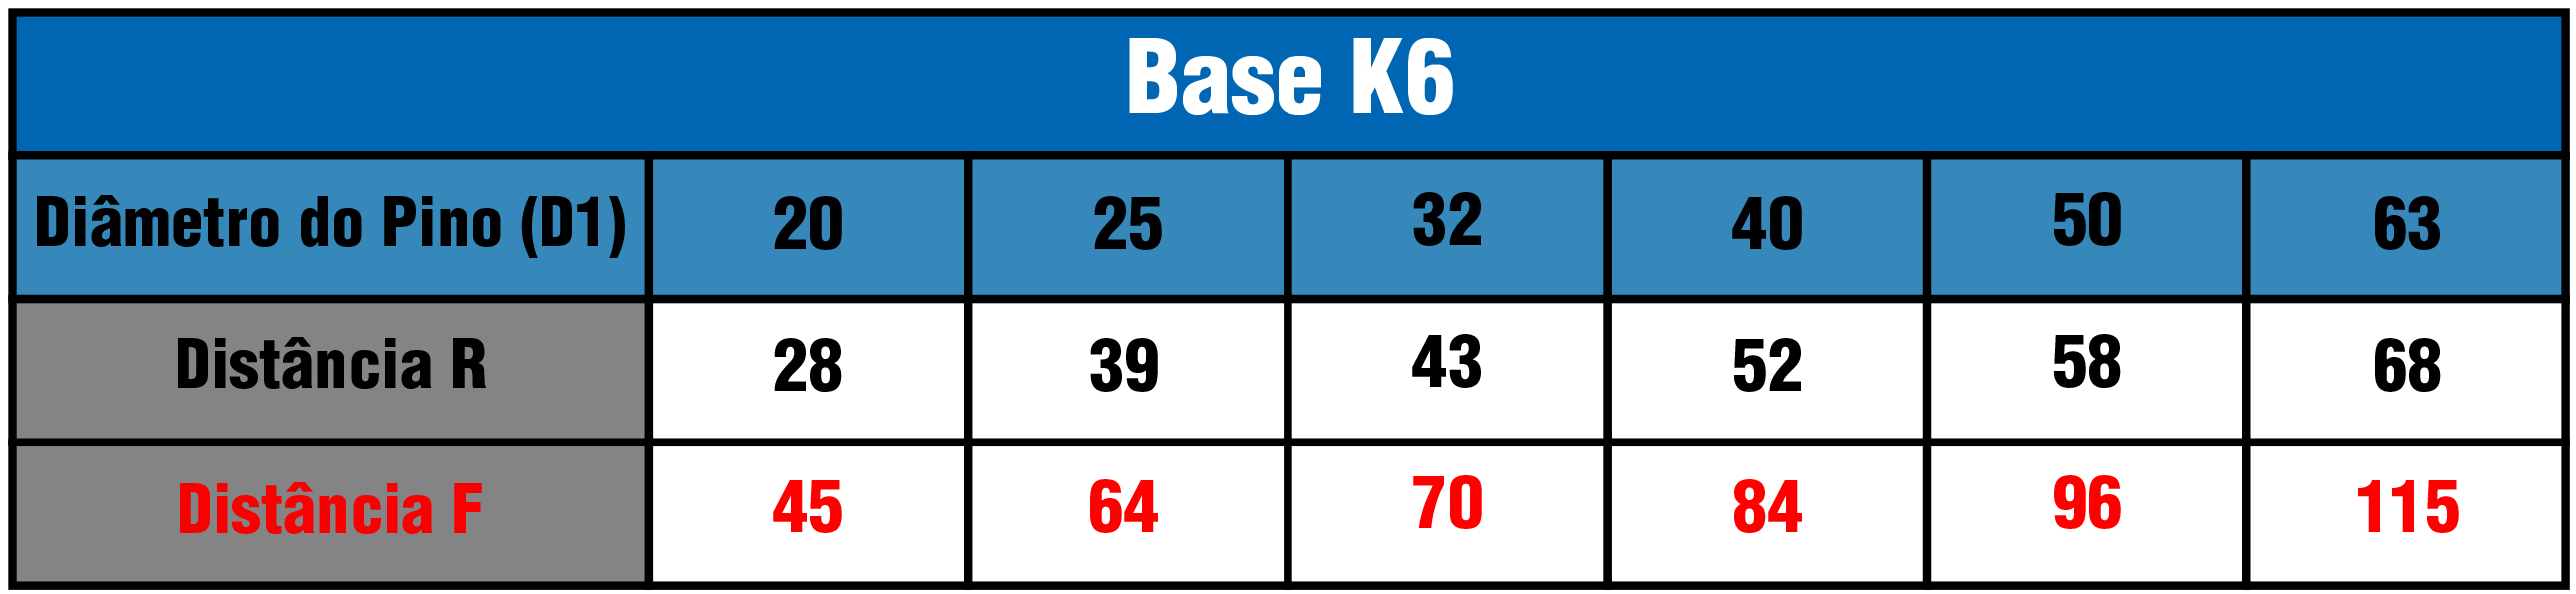 Tabela Base K6